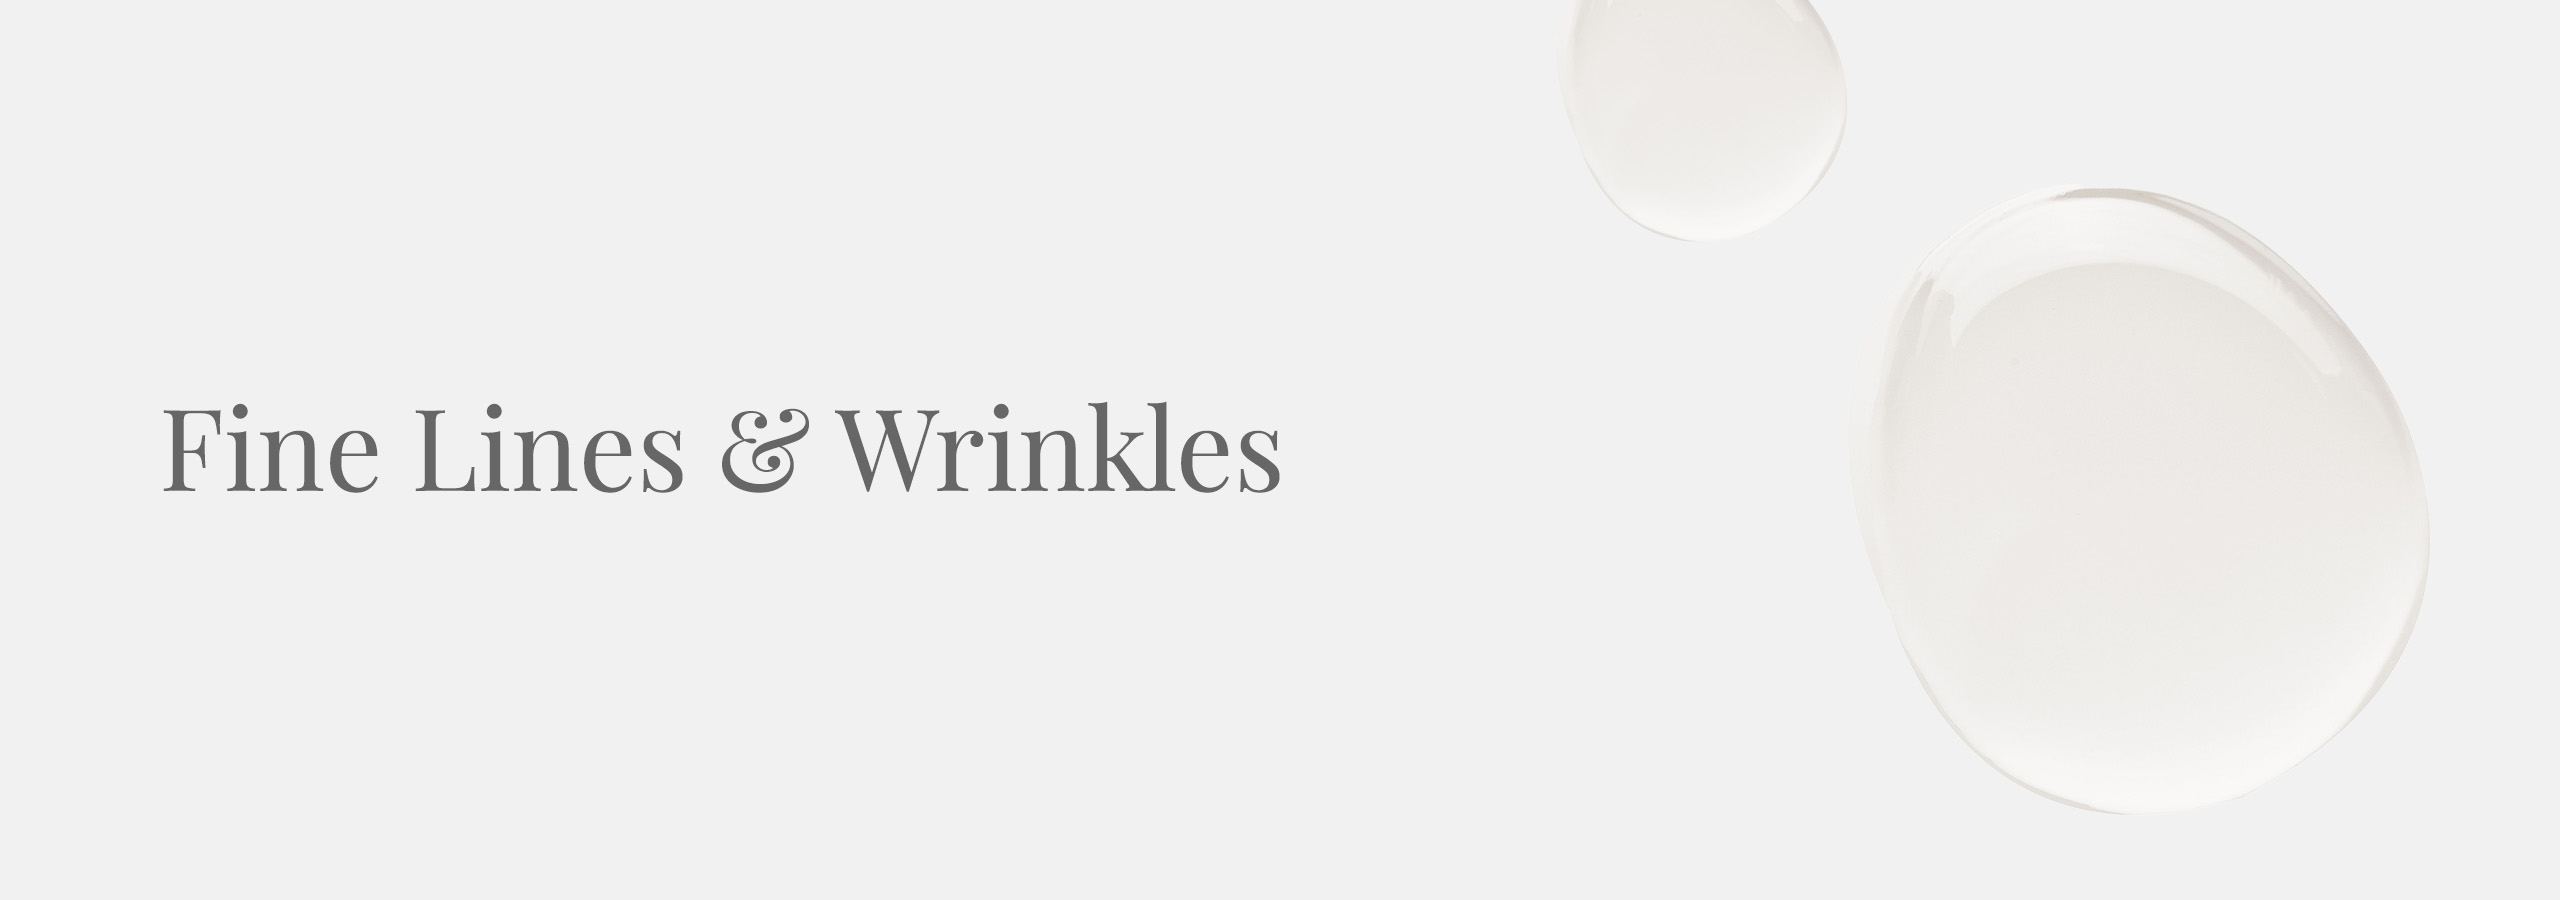 Fine Lines and Wrinkles Desktop